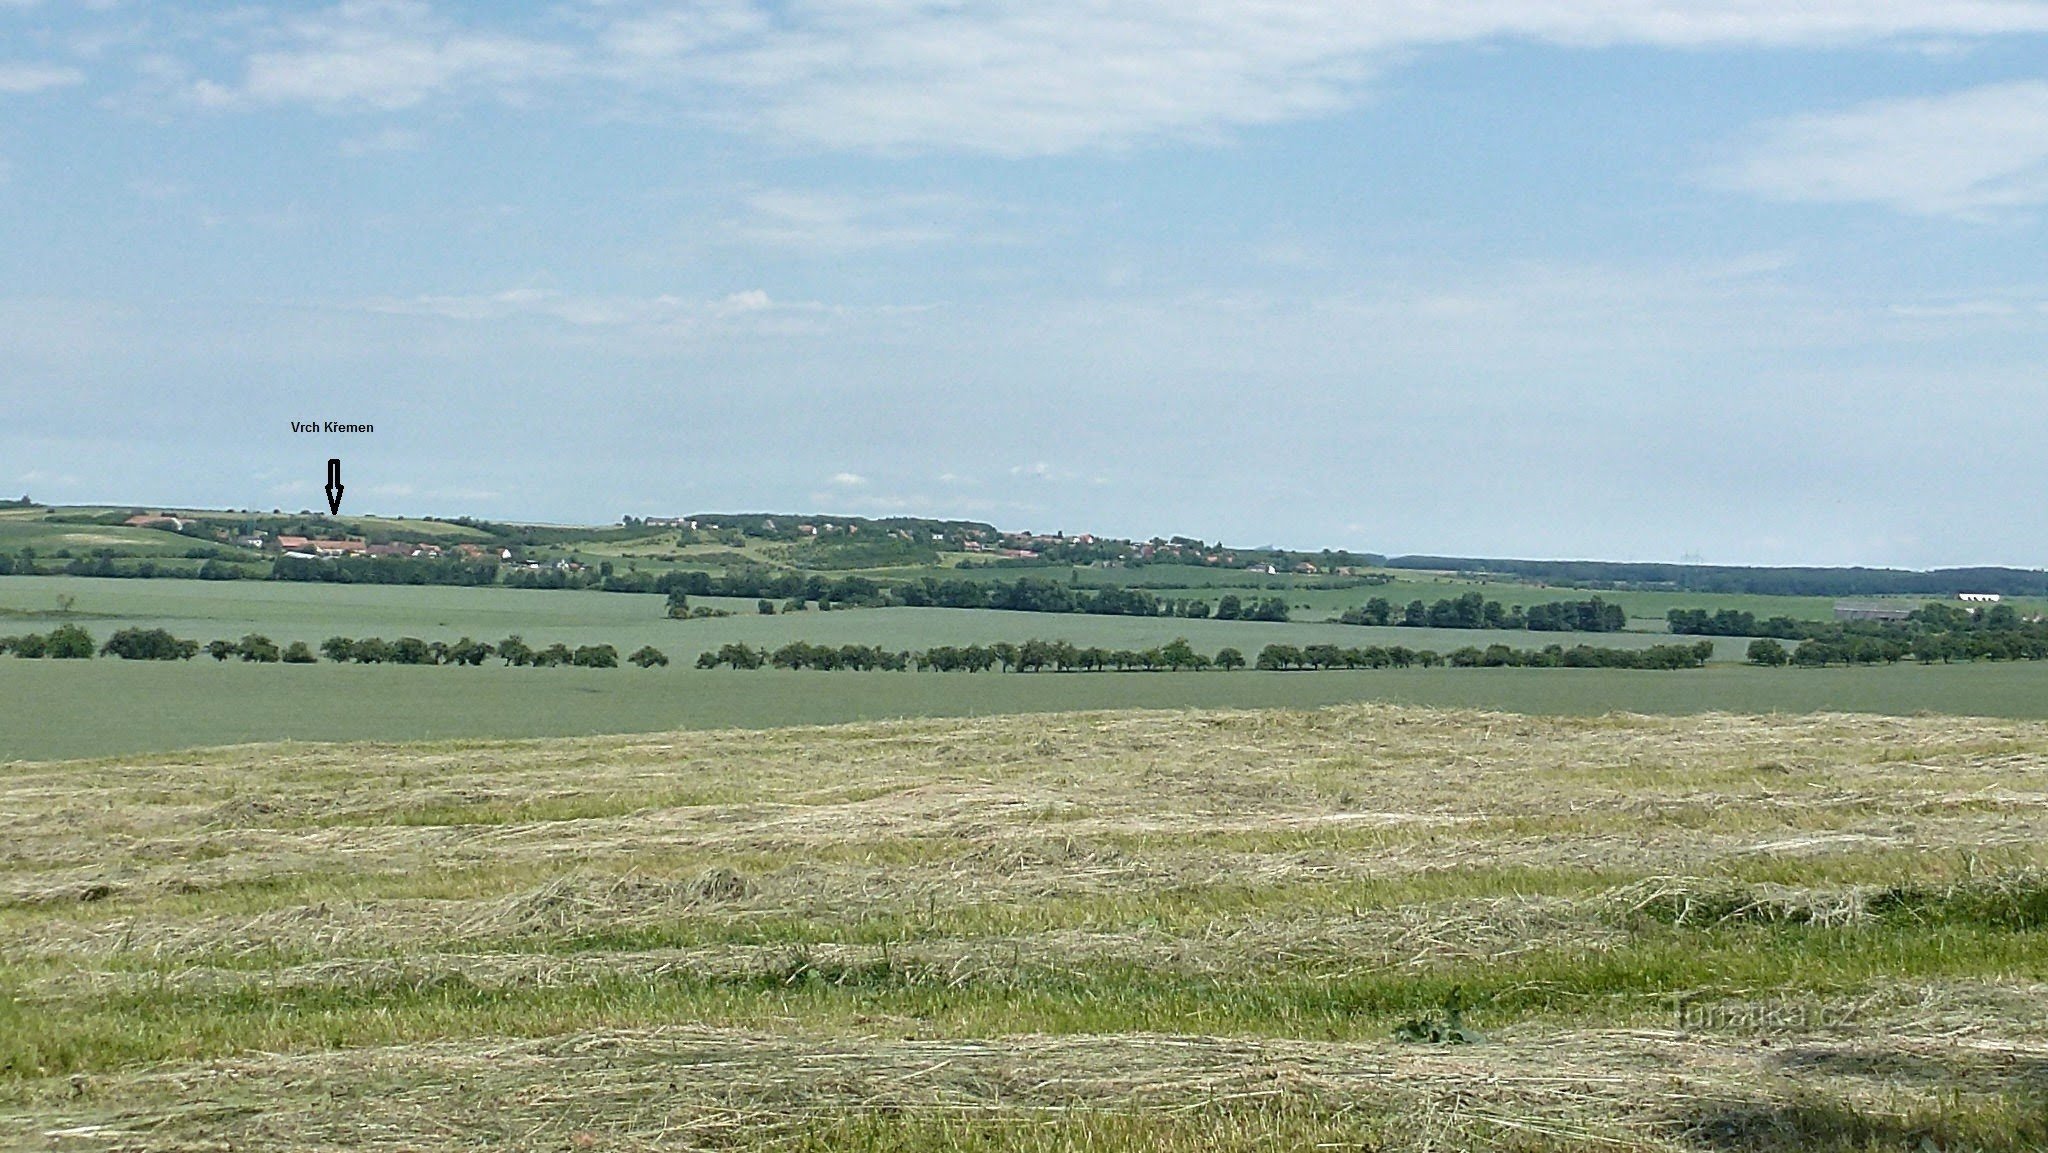 Vrch Křemen je nisko izduženo brdo orijentirano u smjeru istok-zapad. Na c